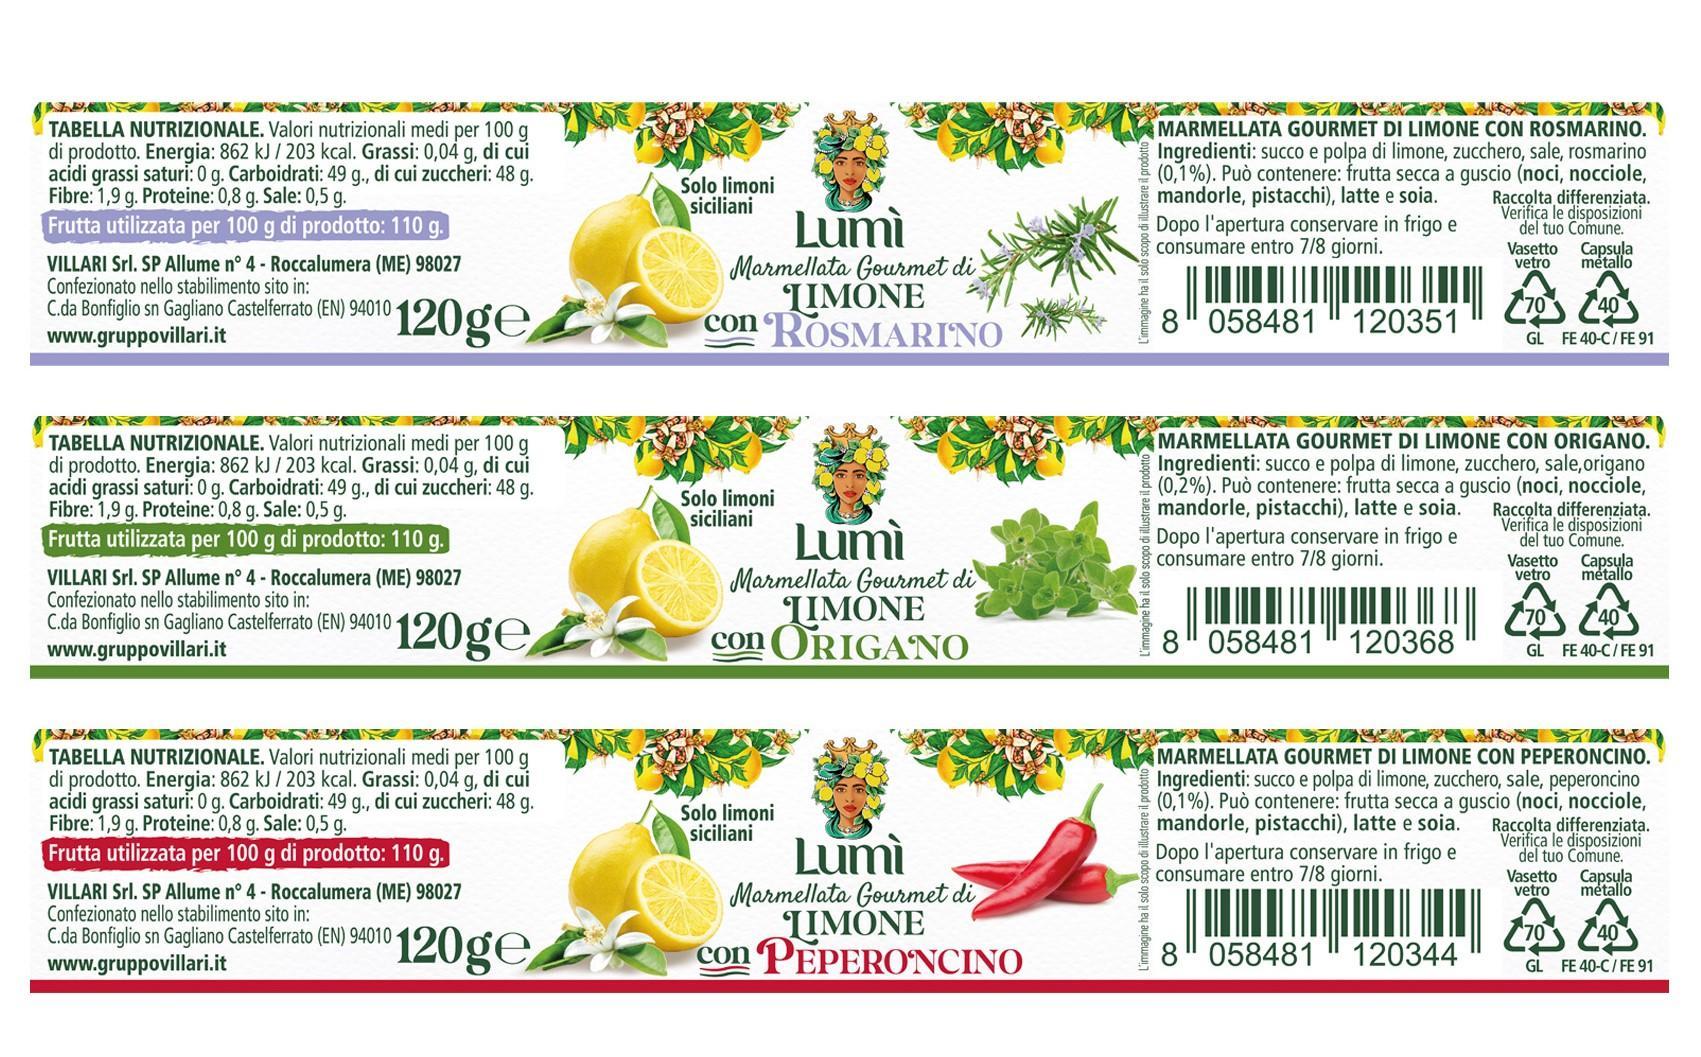 Marmellata gourmet Lumi di limone e spezie mediterranee 12 vasetti da 120gr. Etichette con valori nutrizionali e ingredienti.